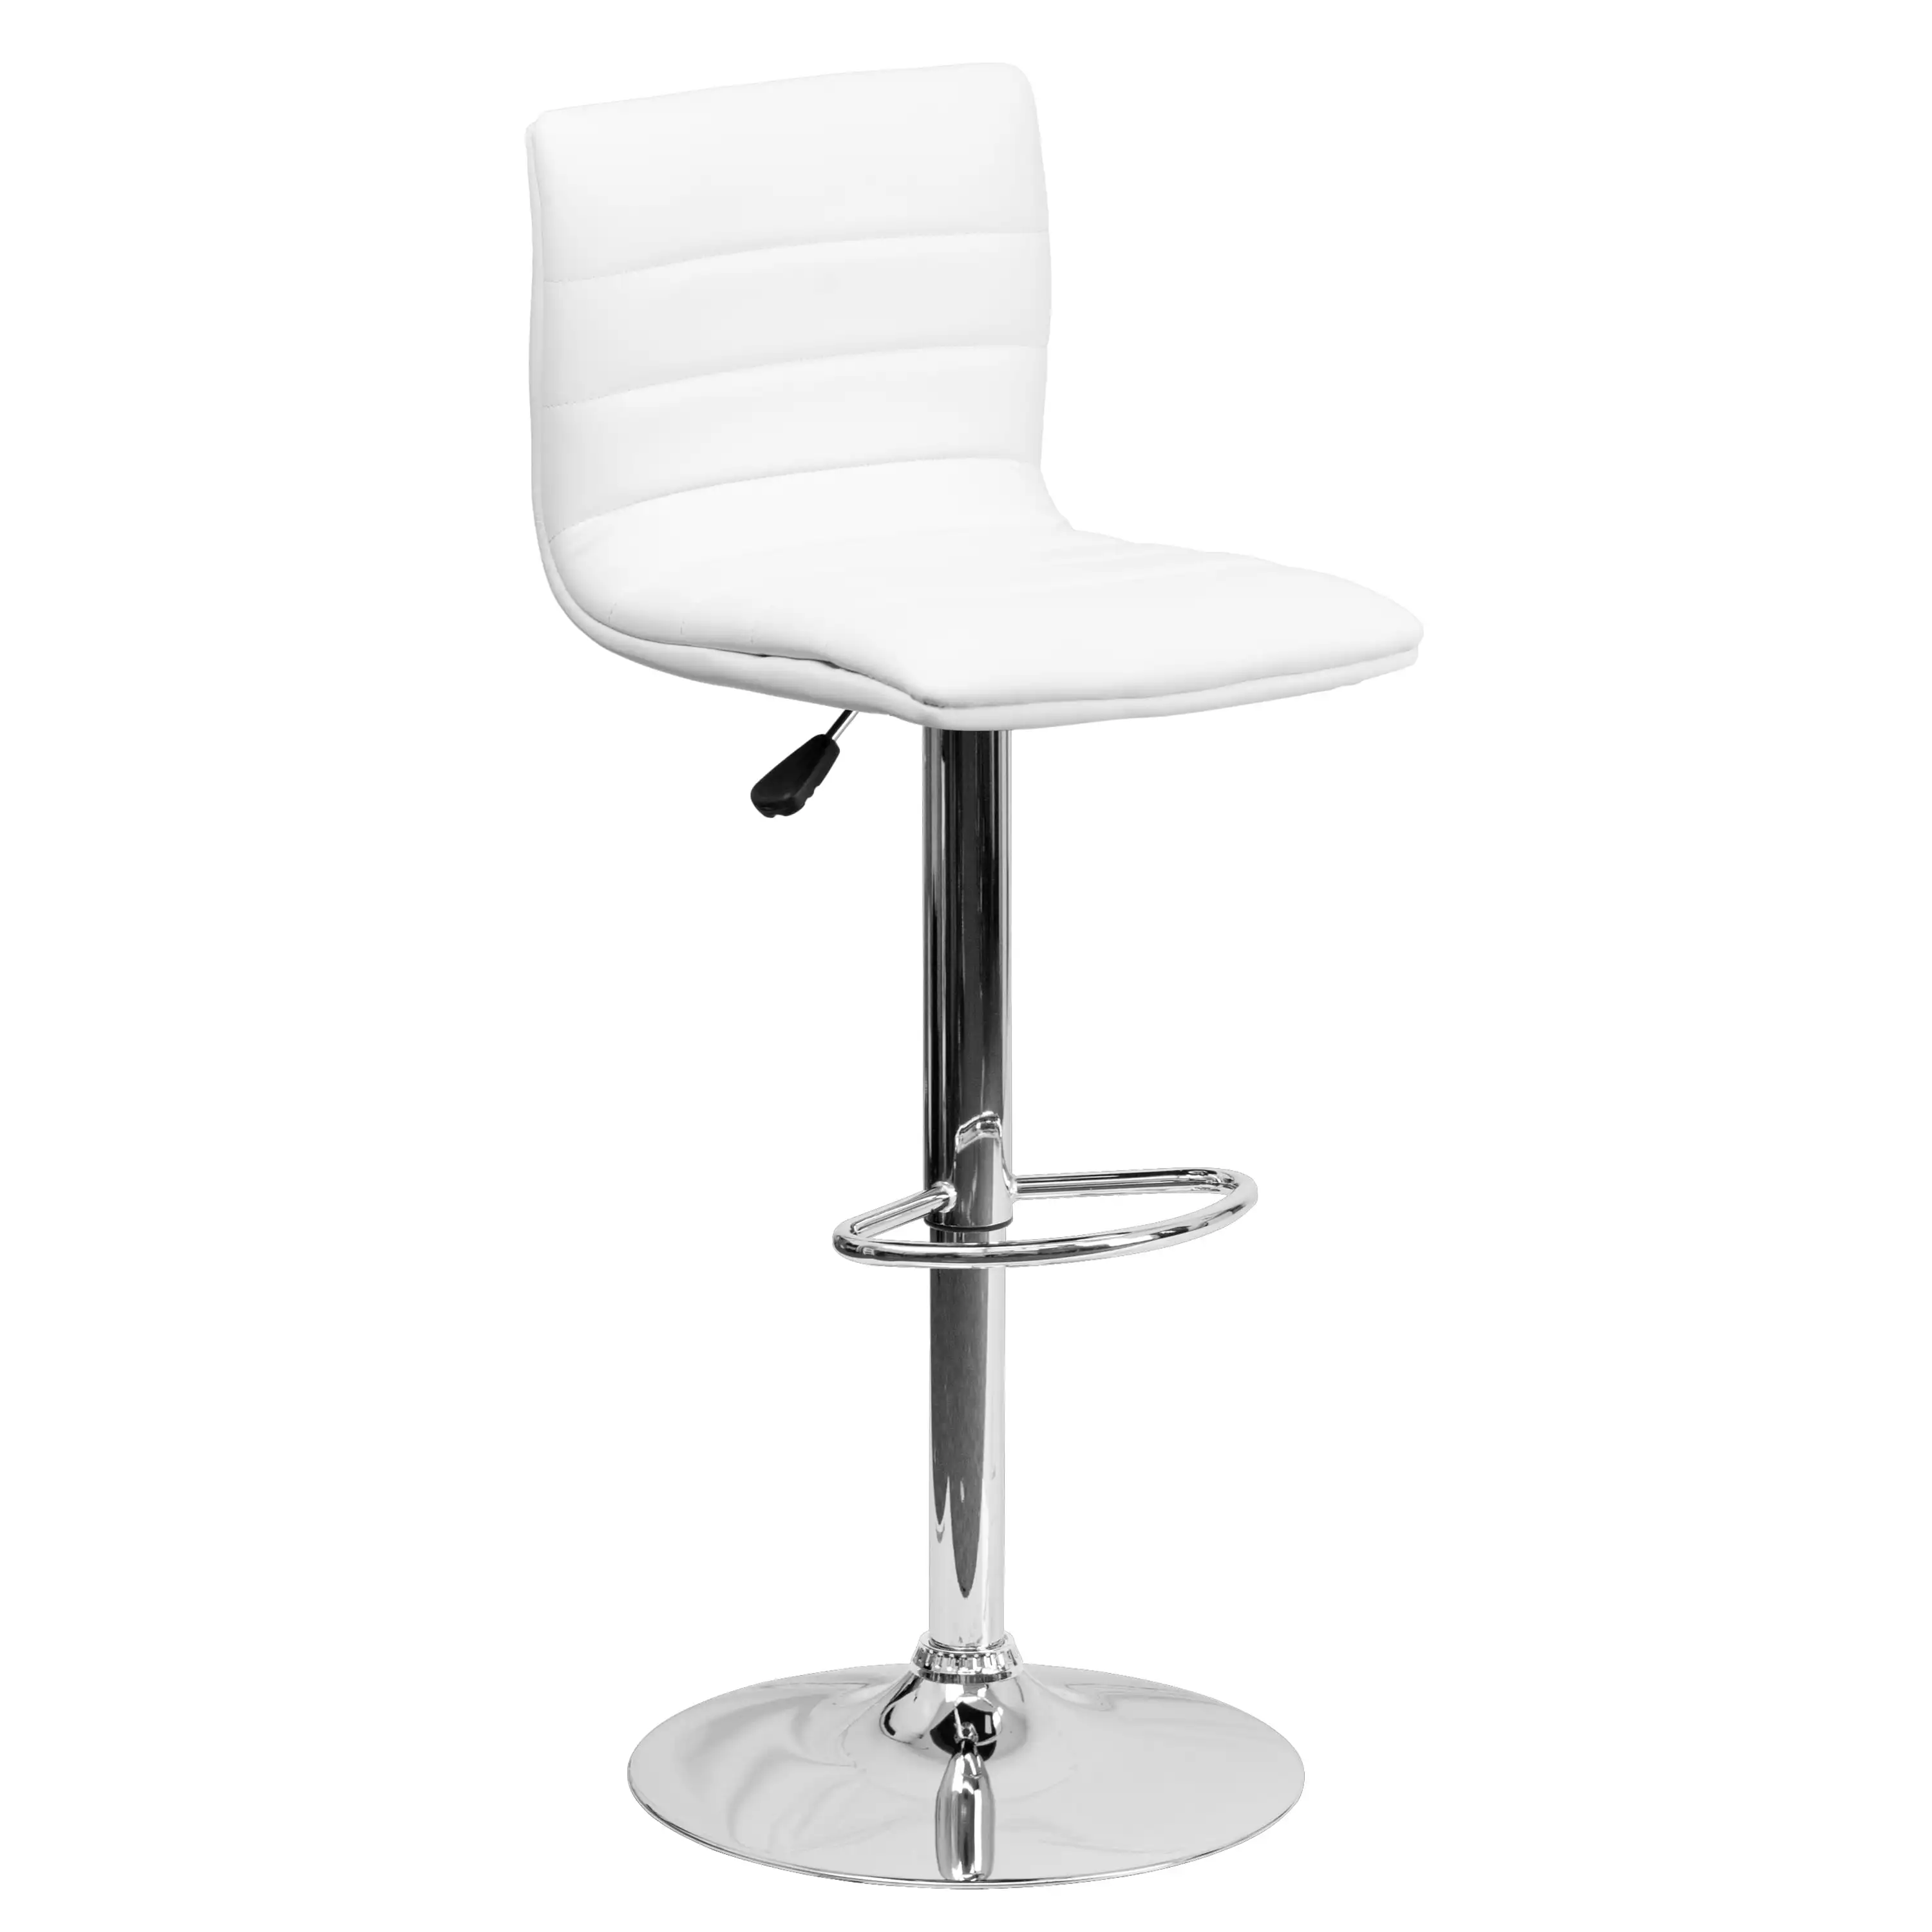 Betsy Современный Белый виниловый Регулируемый барный стул со спинкой, высота стойки Поворотный стул с хромированной подставкой (на складе в США)